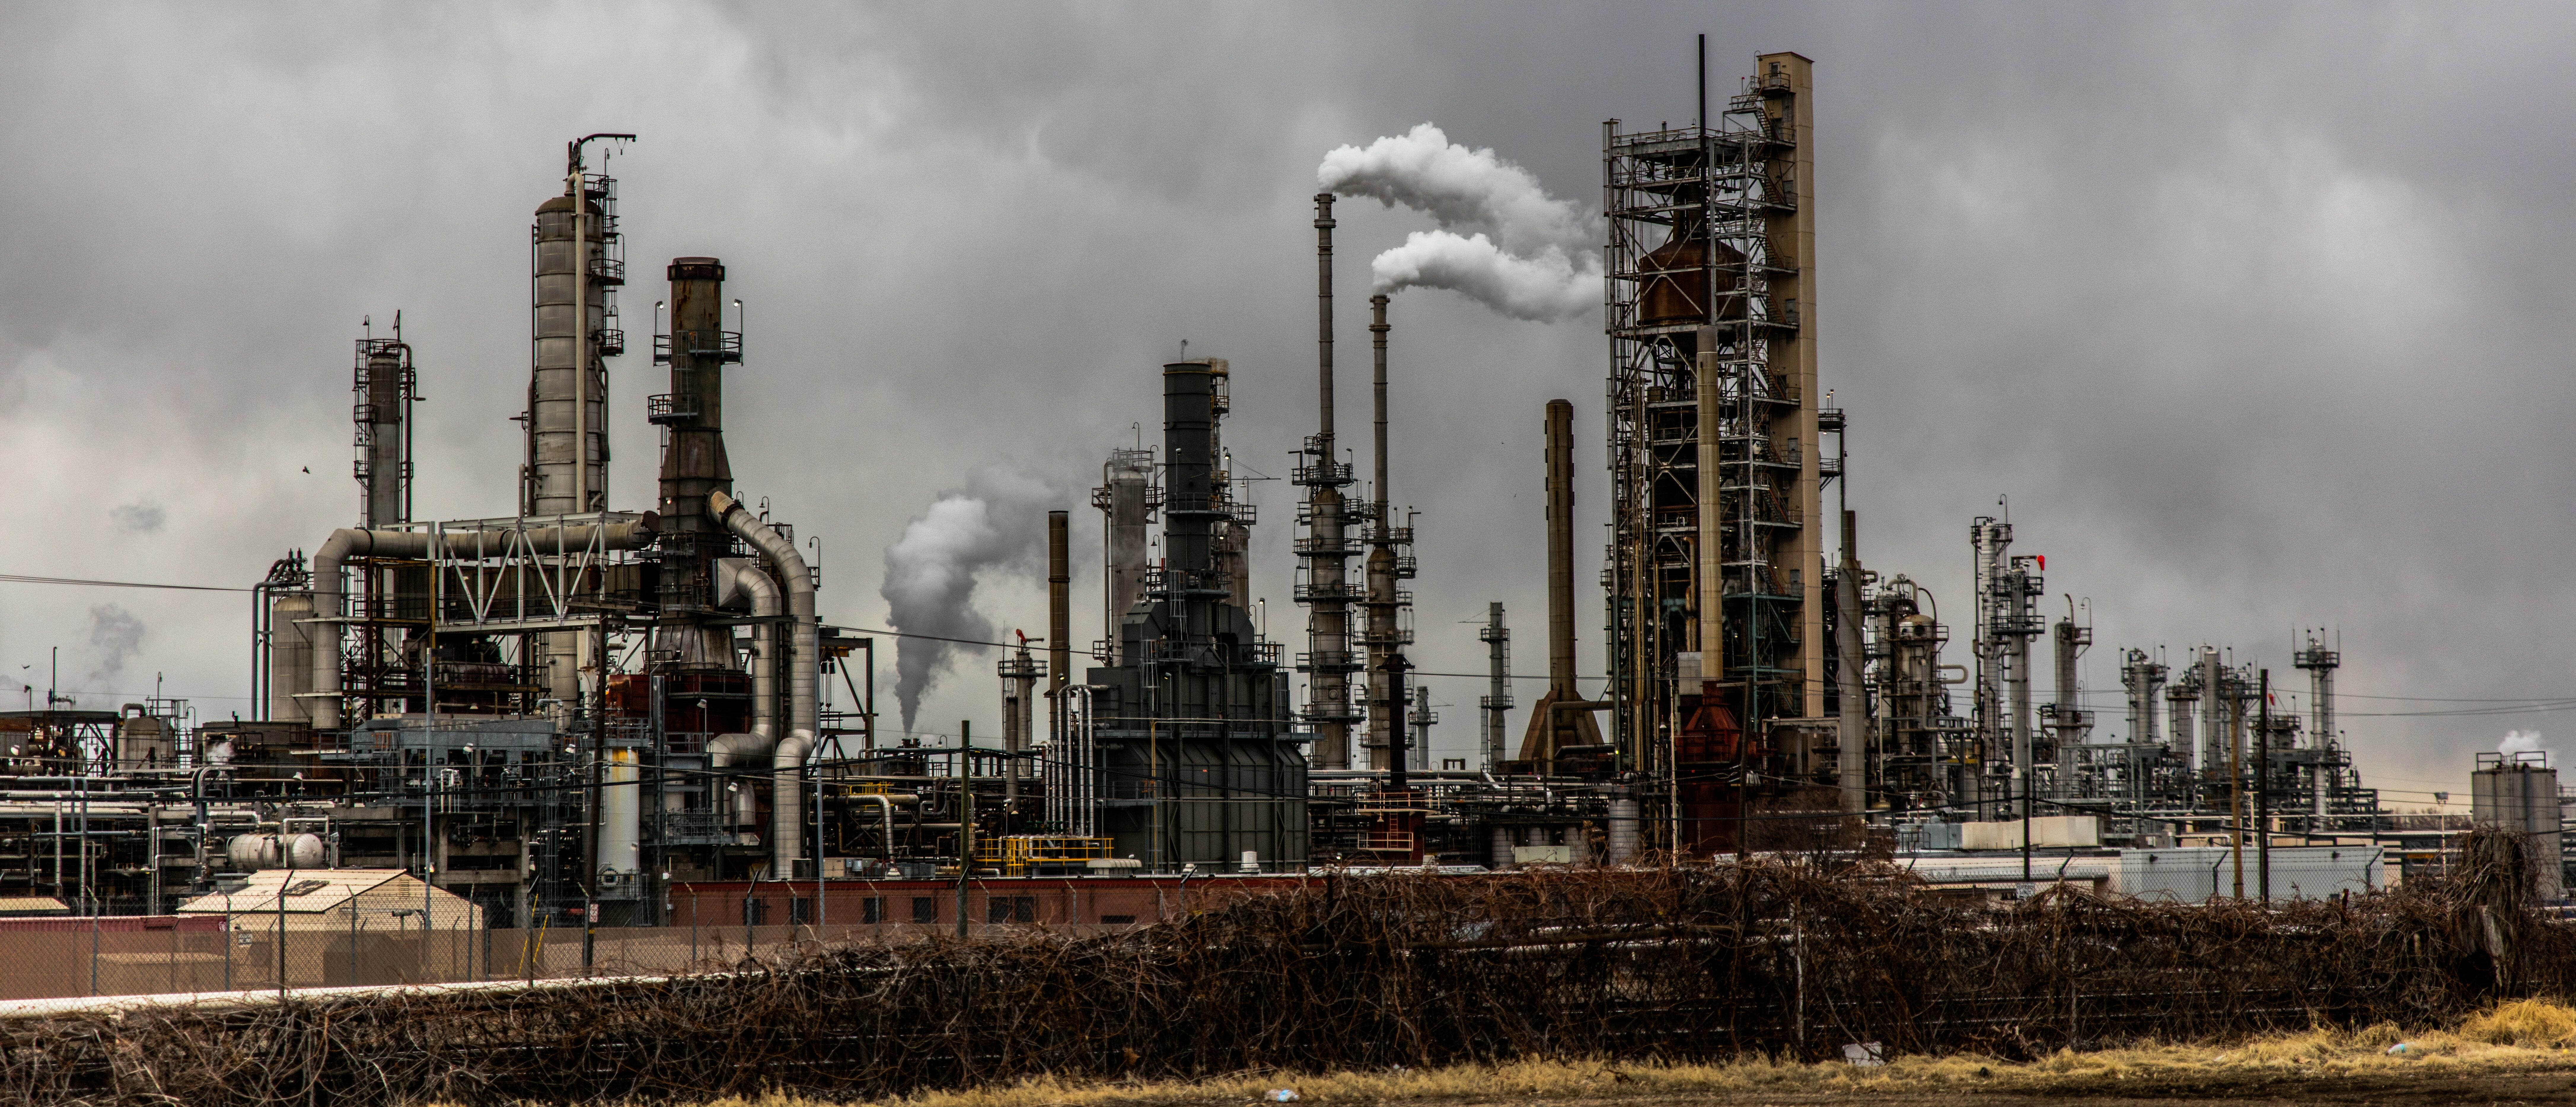 L'industrie pétrolière génère une forte empreinte carbone (Photo: Patrick Hendry aur Unsplash)